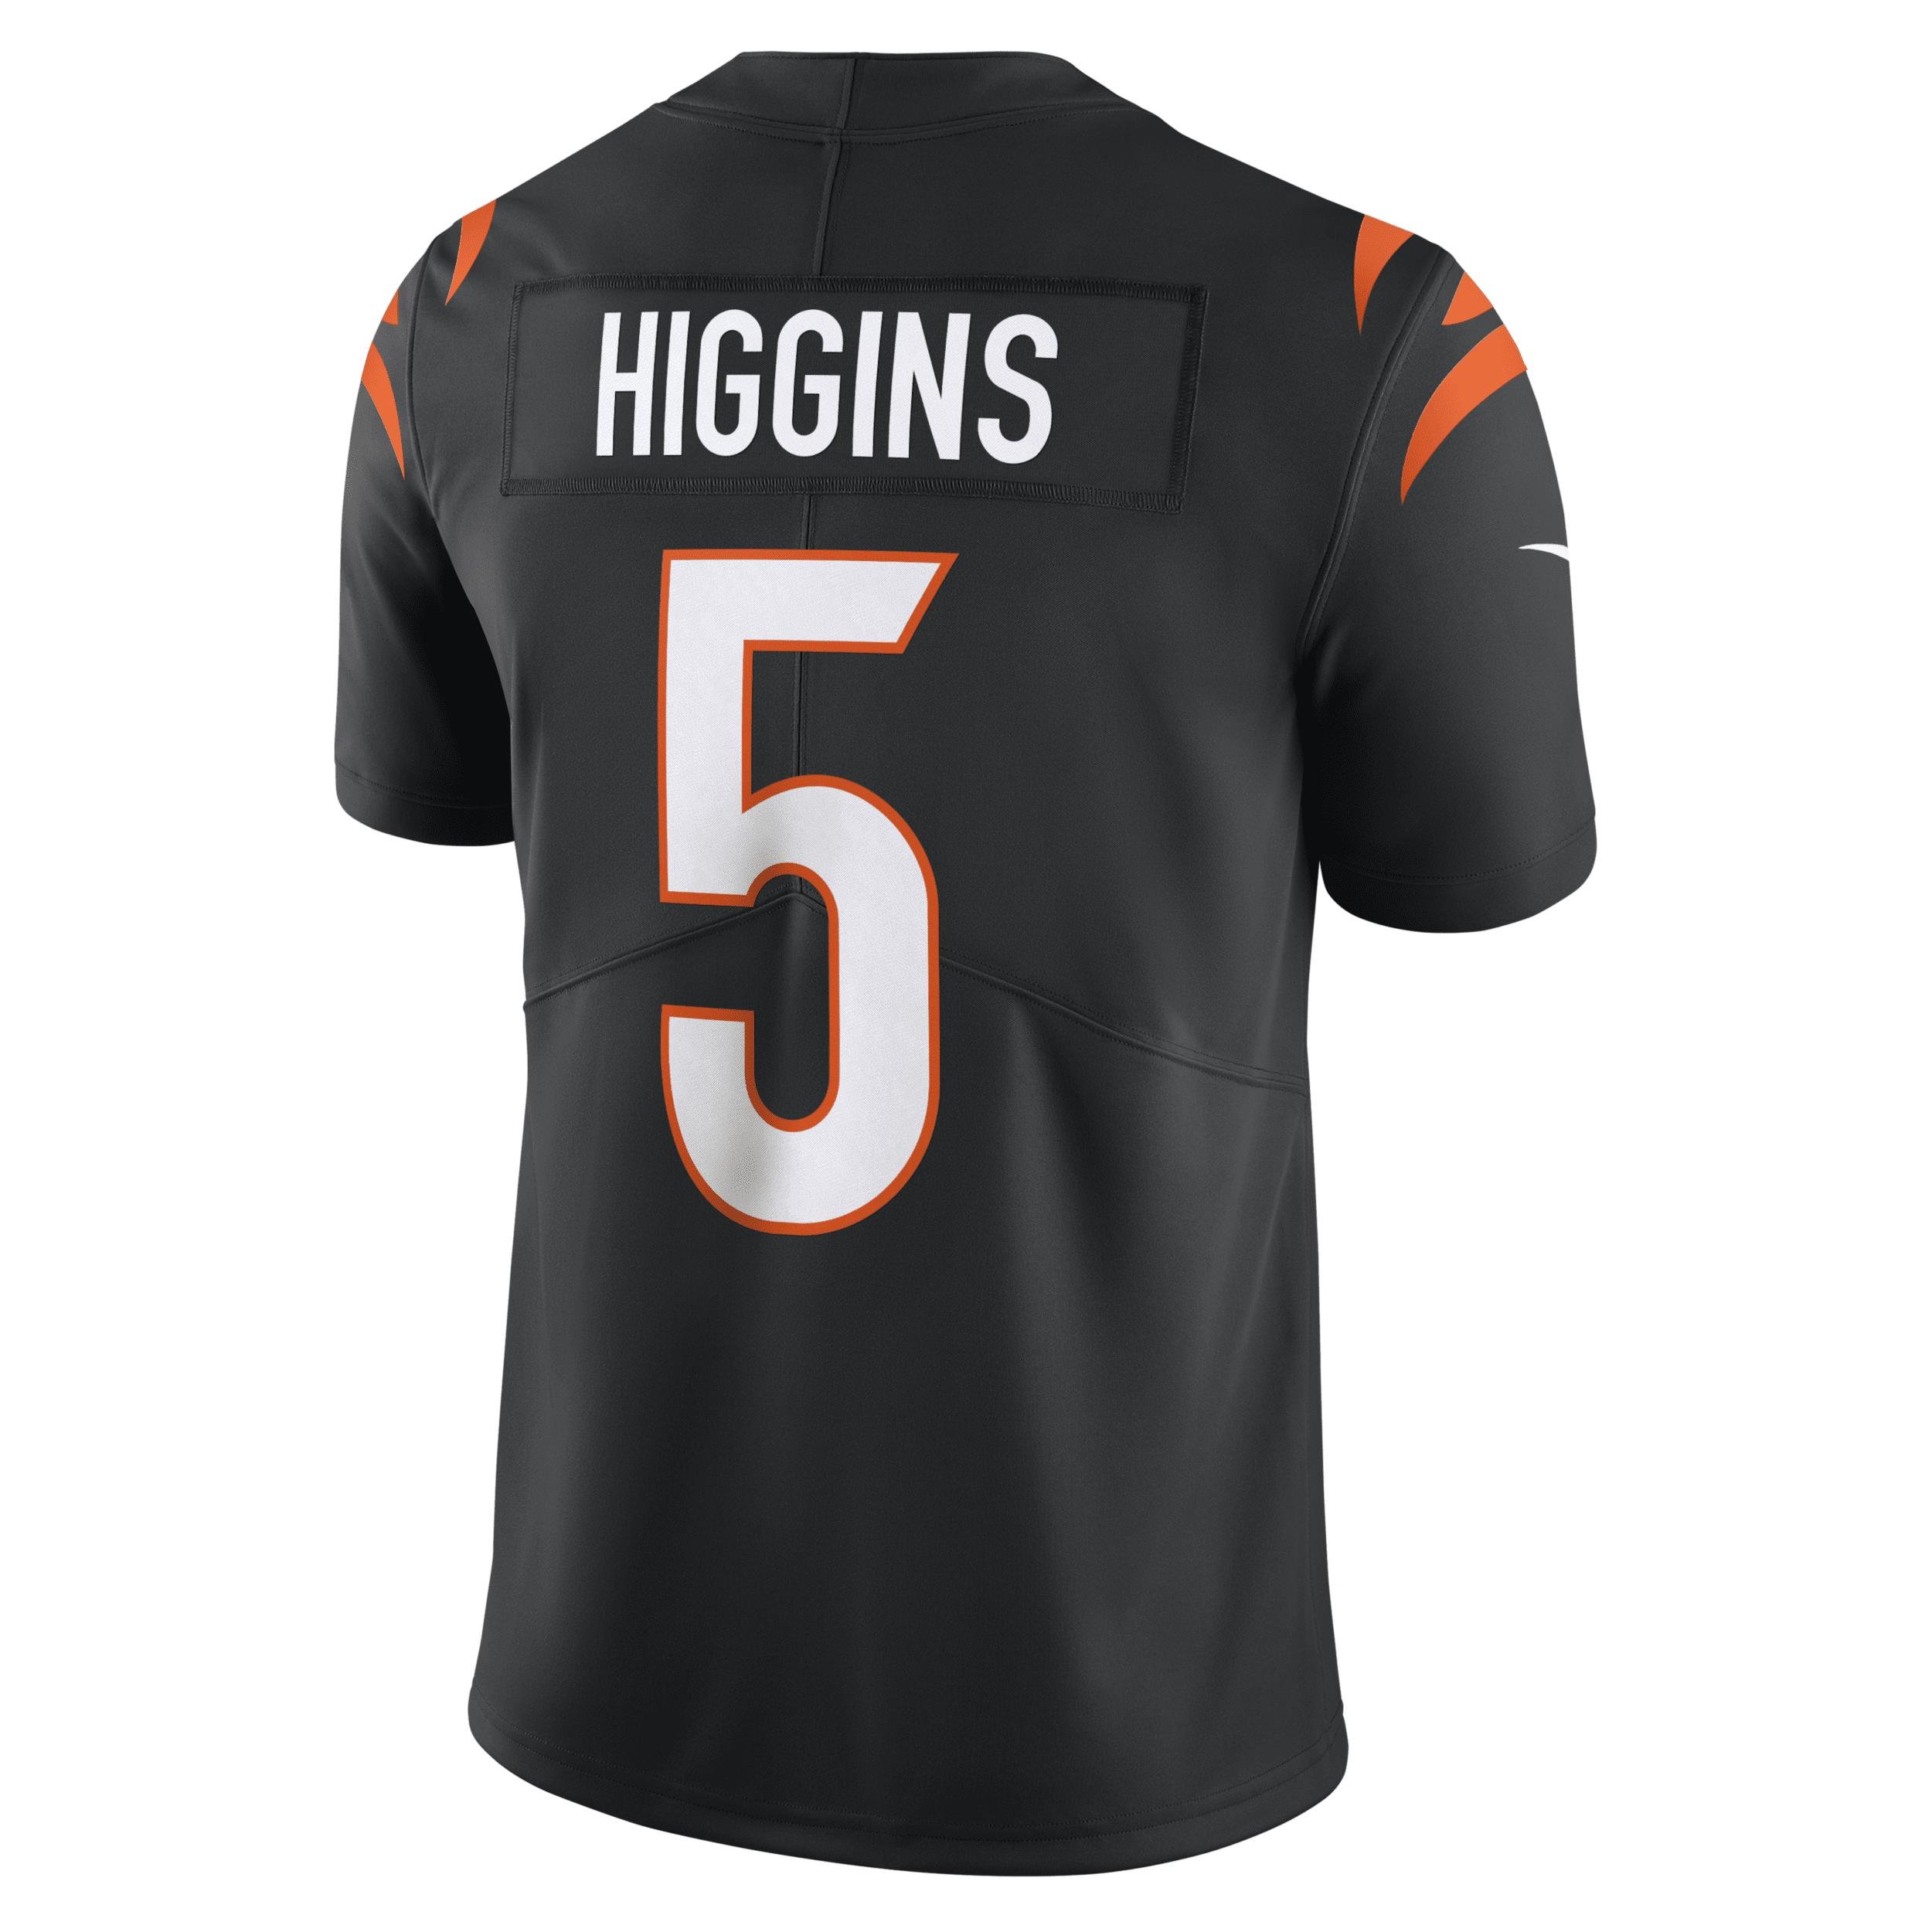 Nike Tee Higgins Cincinnati Bengals Dri-fit Nfl Limited Football